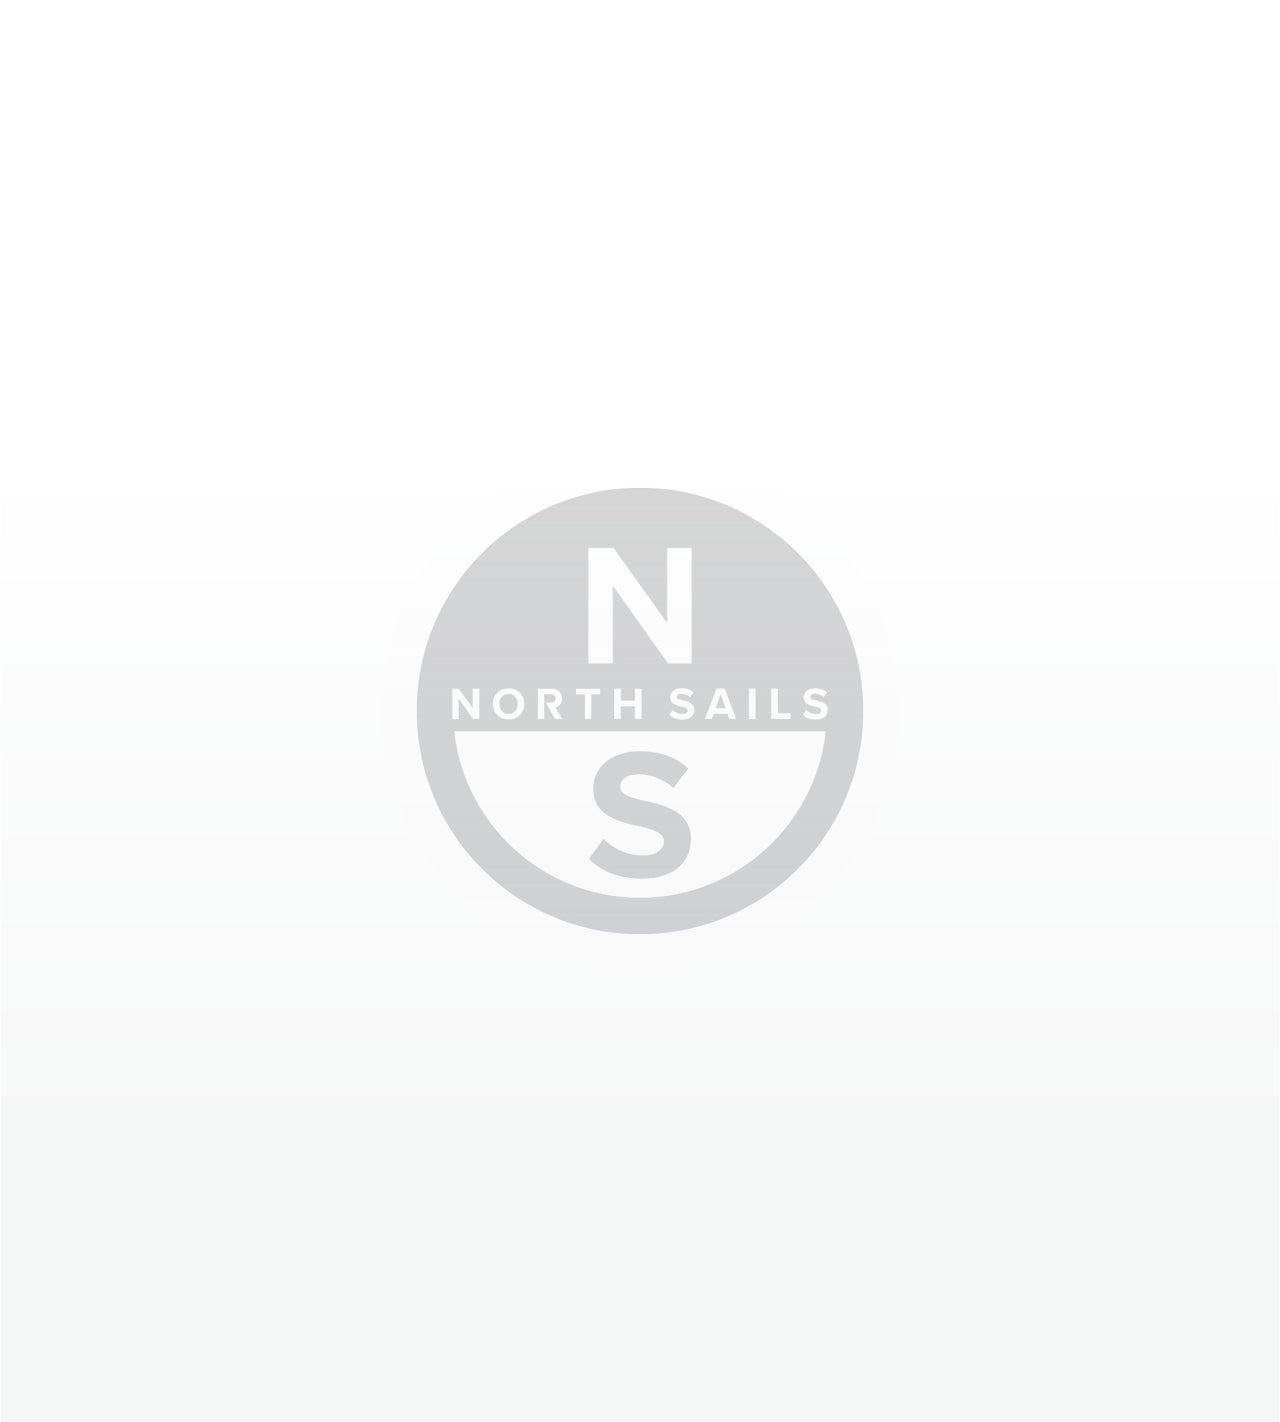 North Sails Soling AP-2 Mainsail